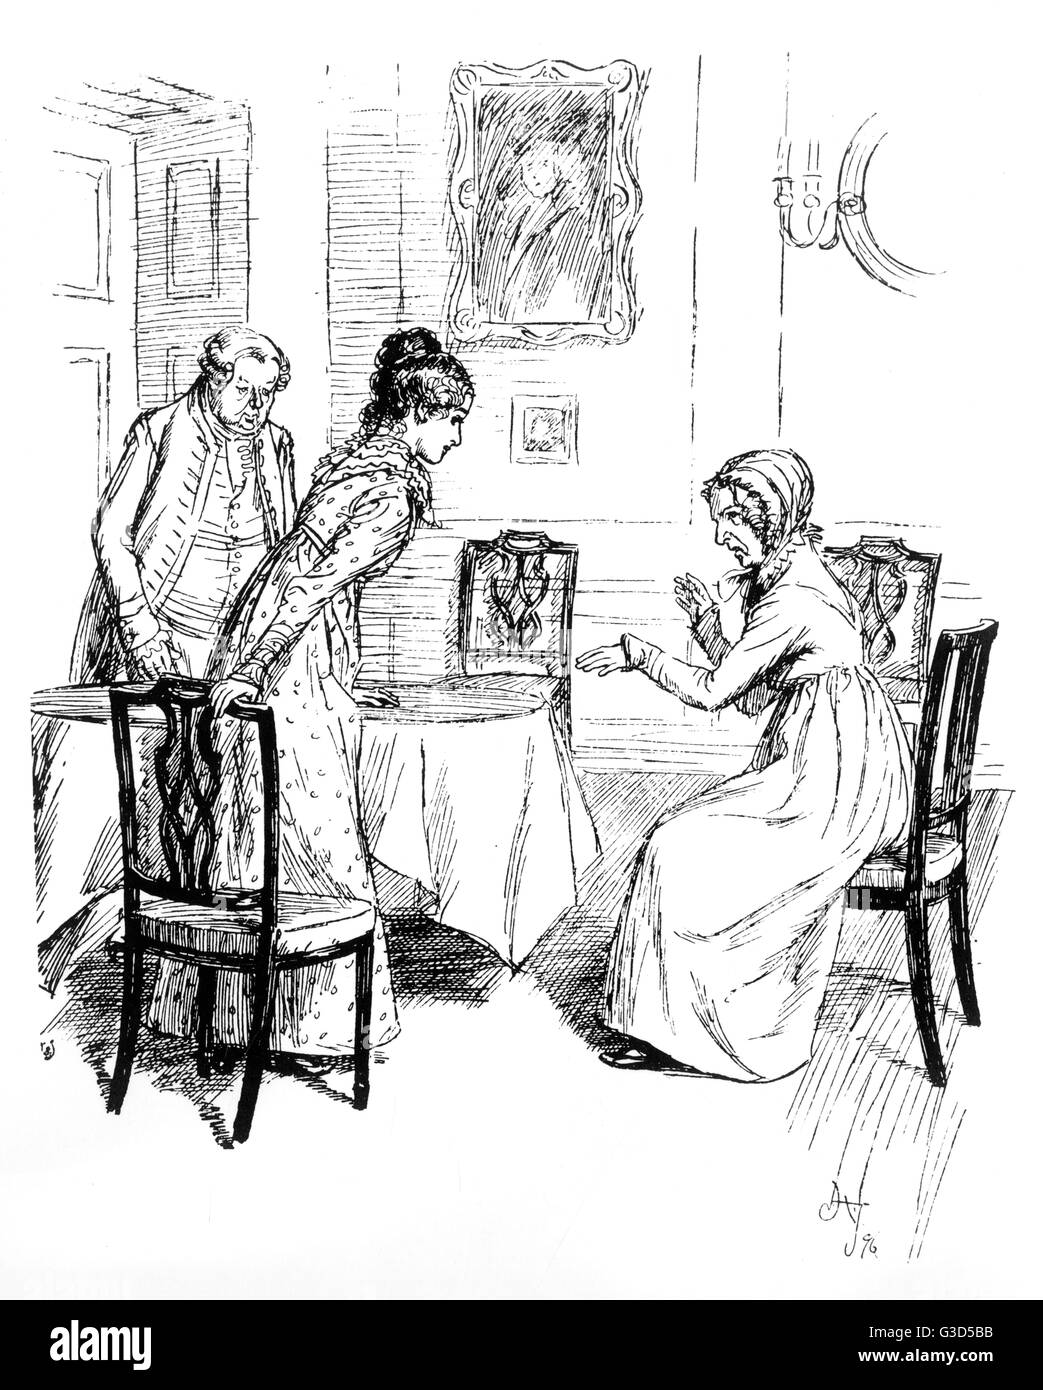 Fanny Price y la Sra. Norris: Primera fecha de publicación: 1814 Foto de stock